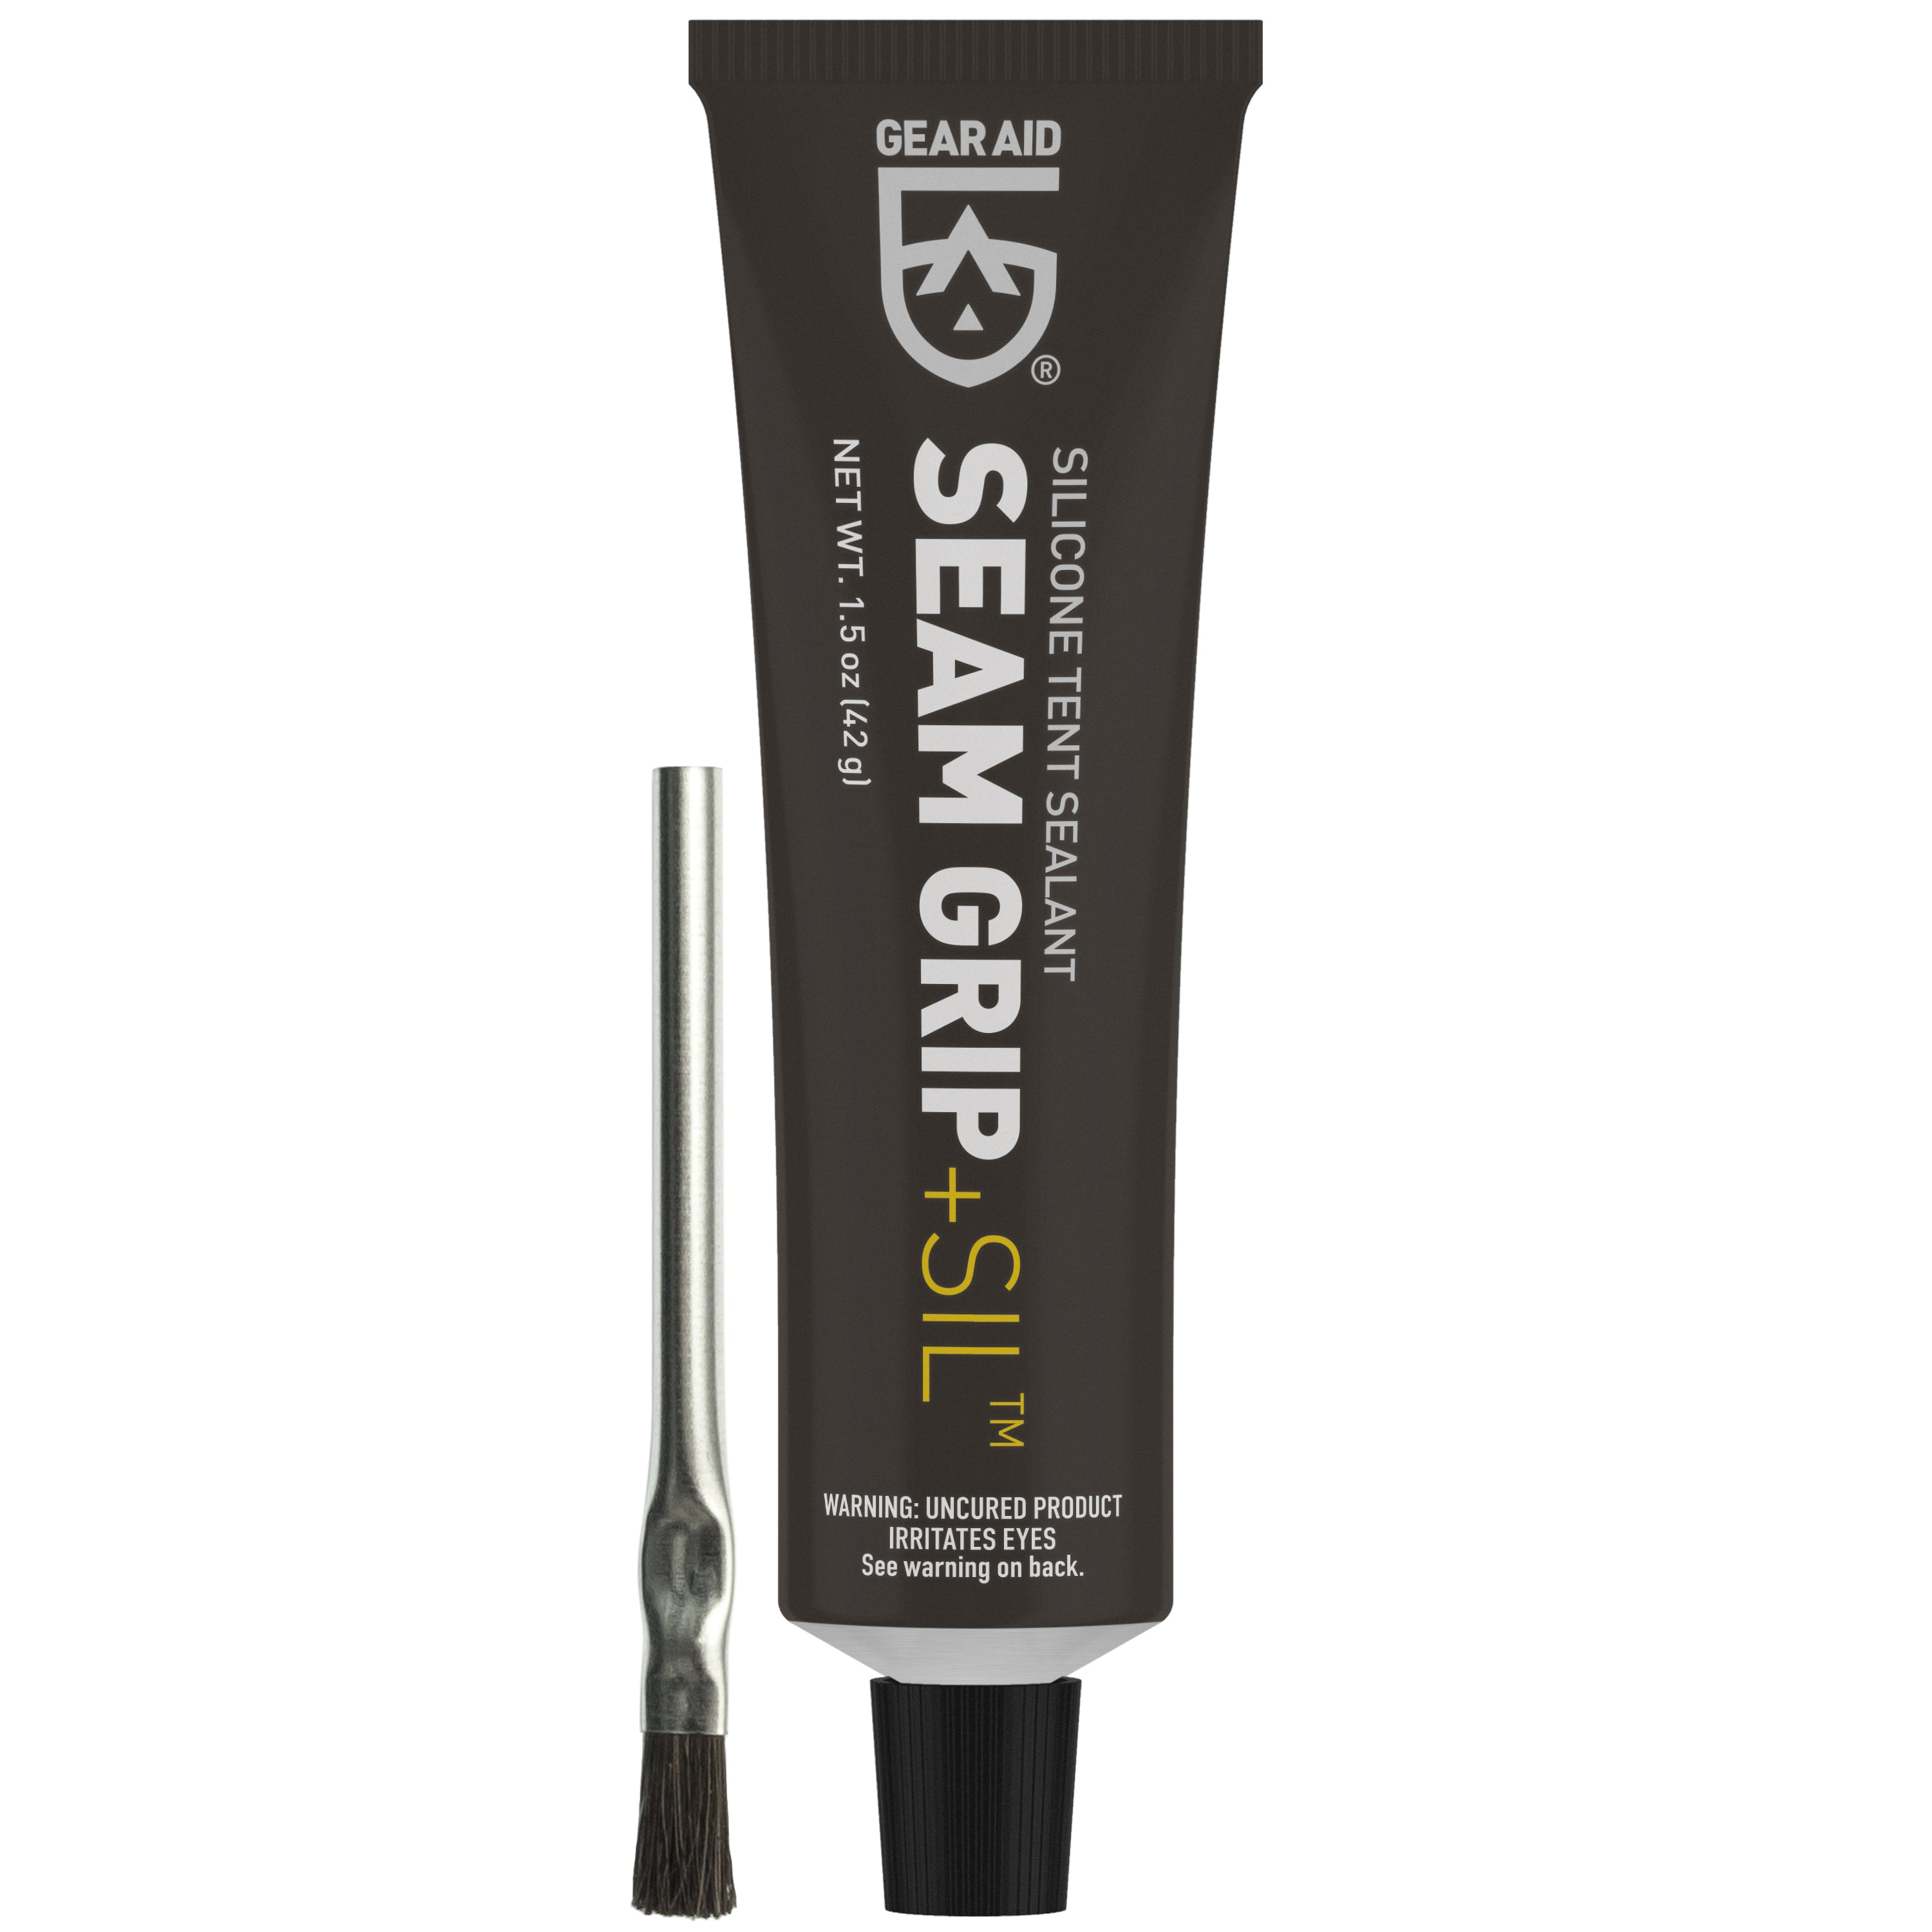 Gear Aid Seam Grip + Sil (SilNet) tube